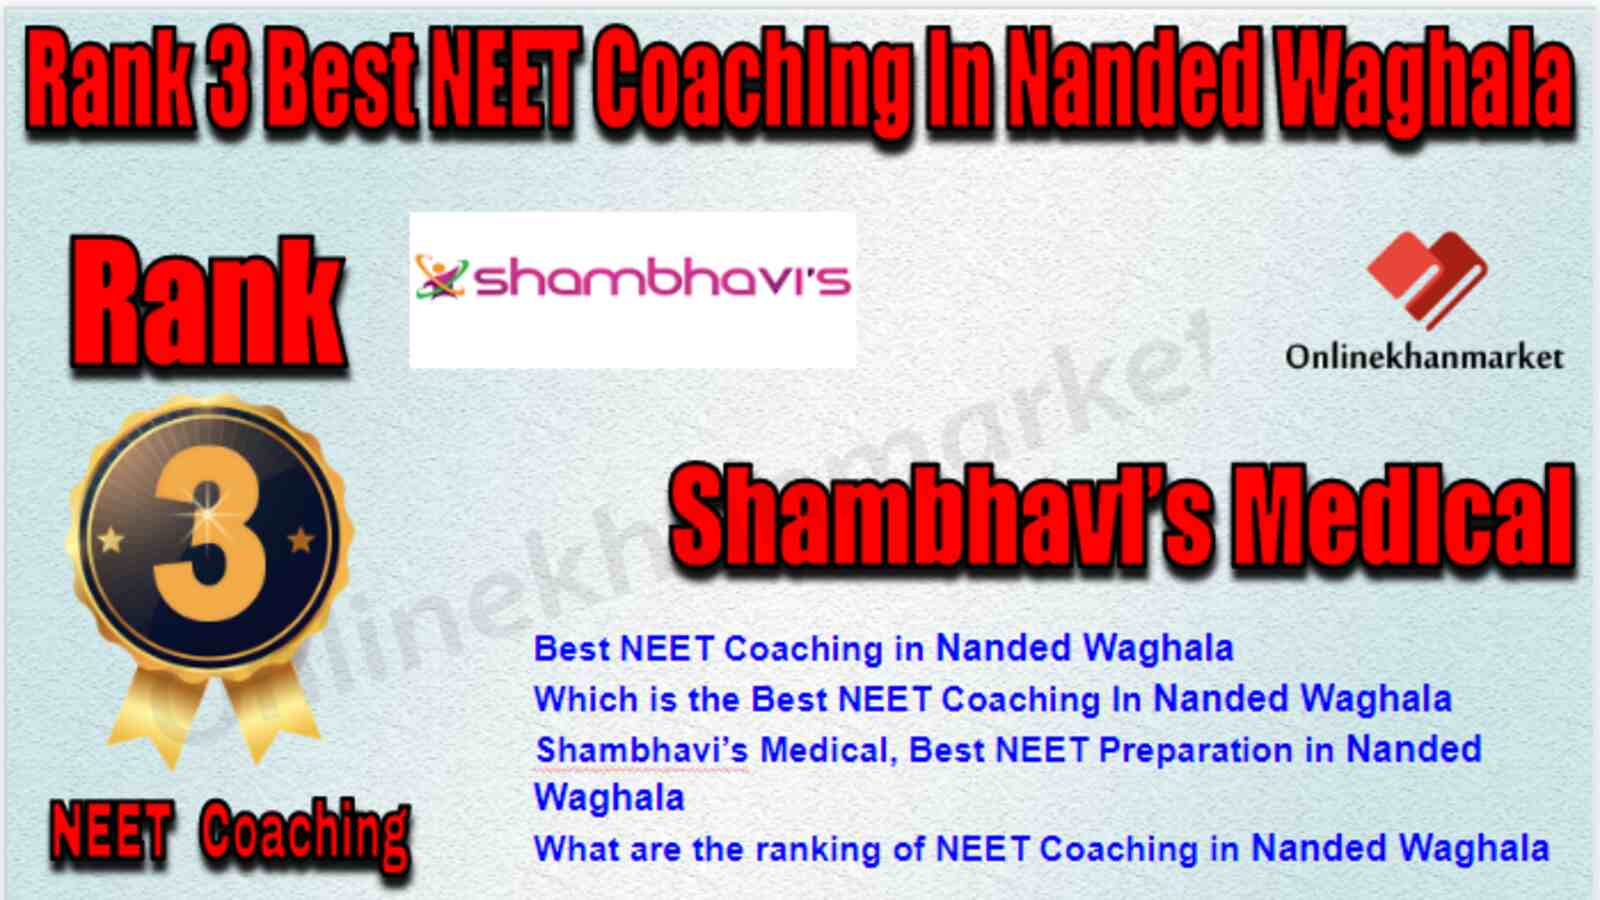 Rank 3 Best NEET Coaching in Nanded Waghala